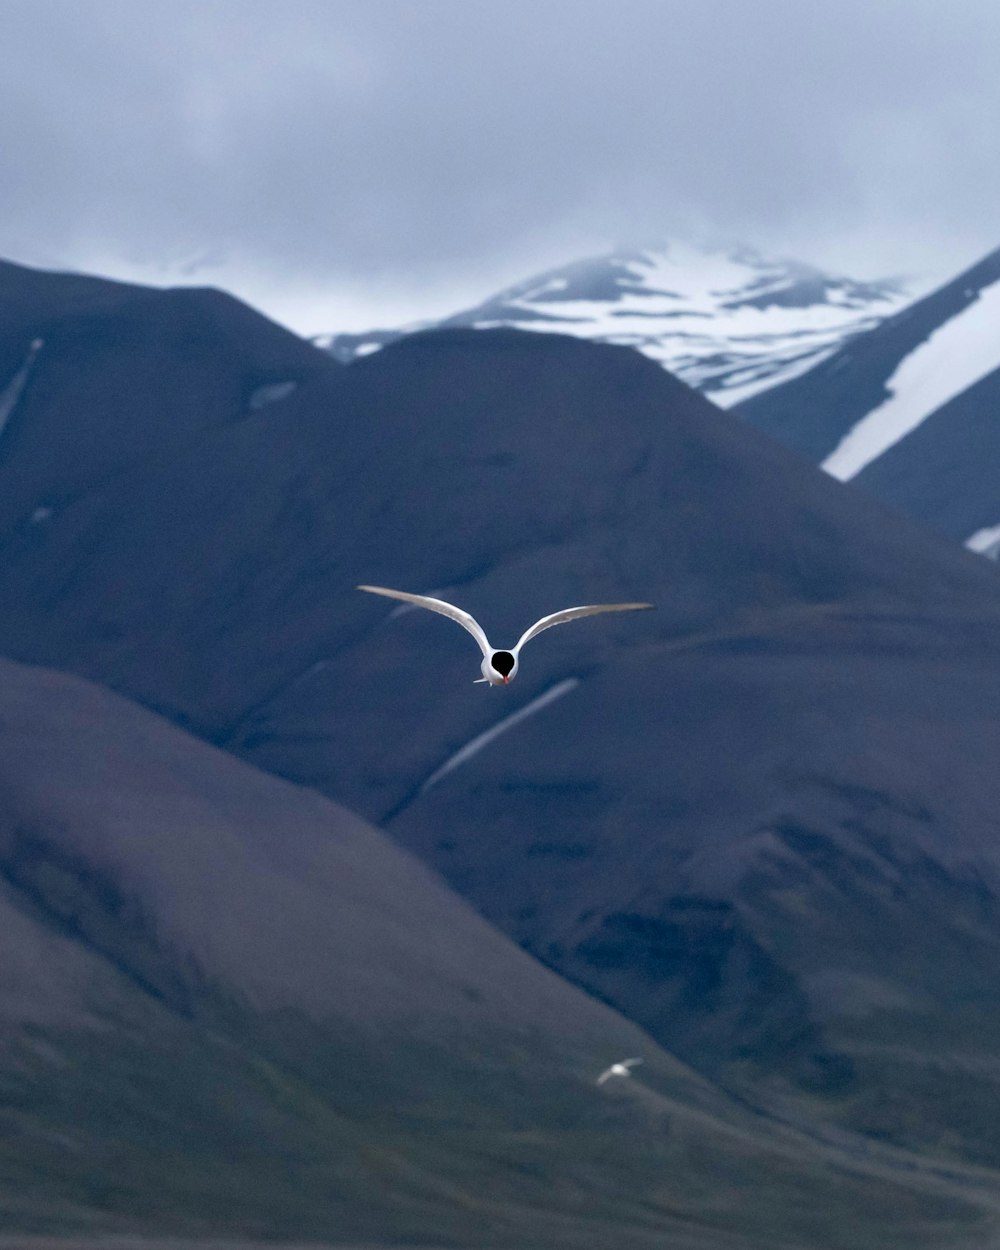 Zeitrafferfotografie eines Vogels im Flug über Berge